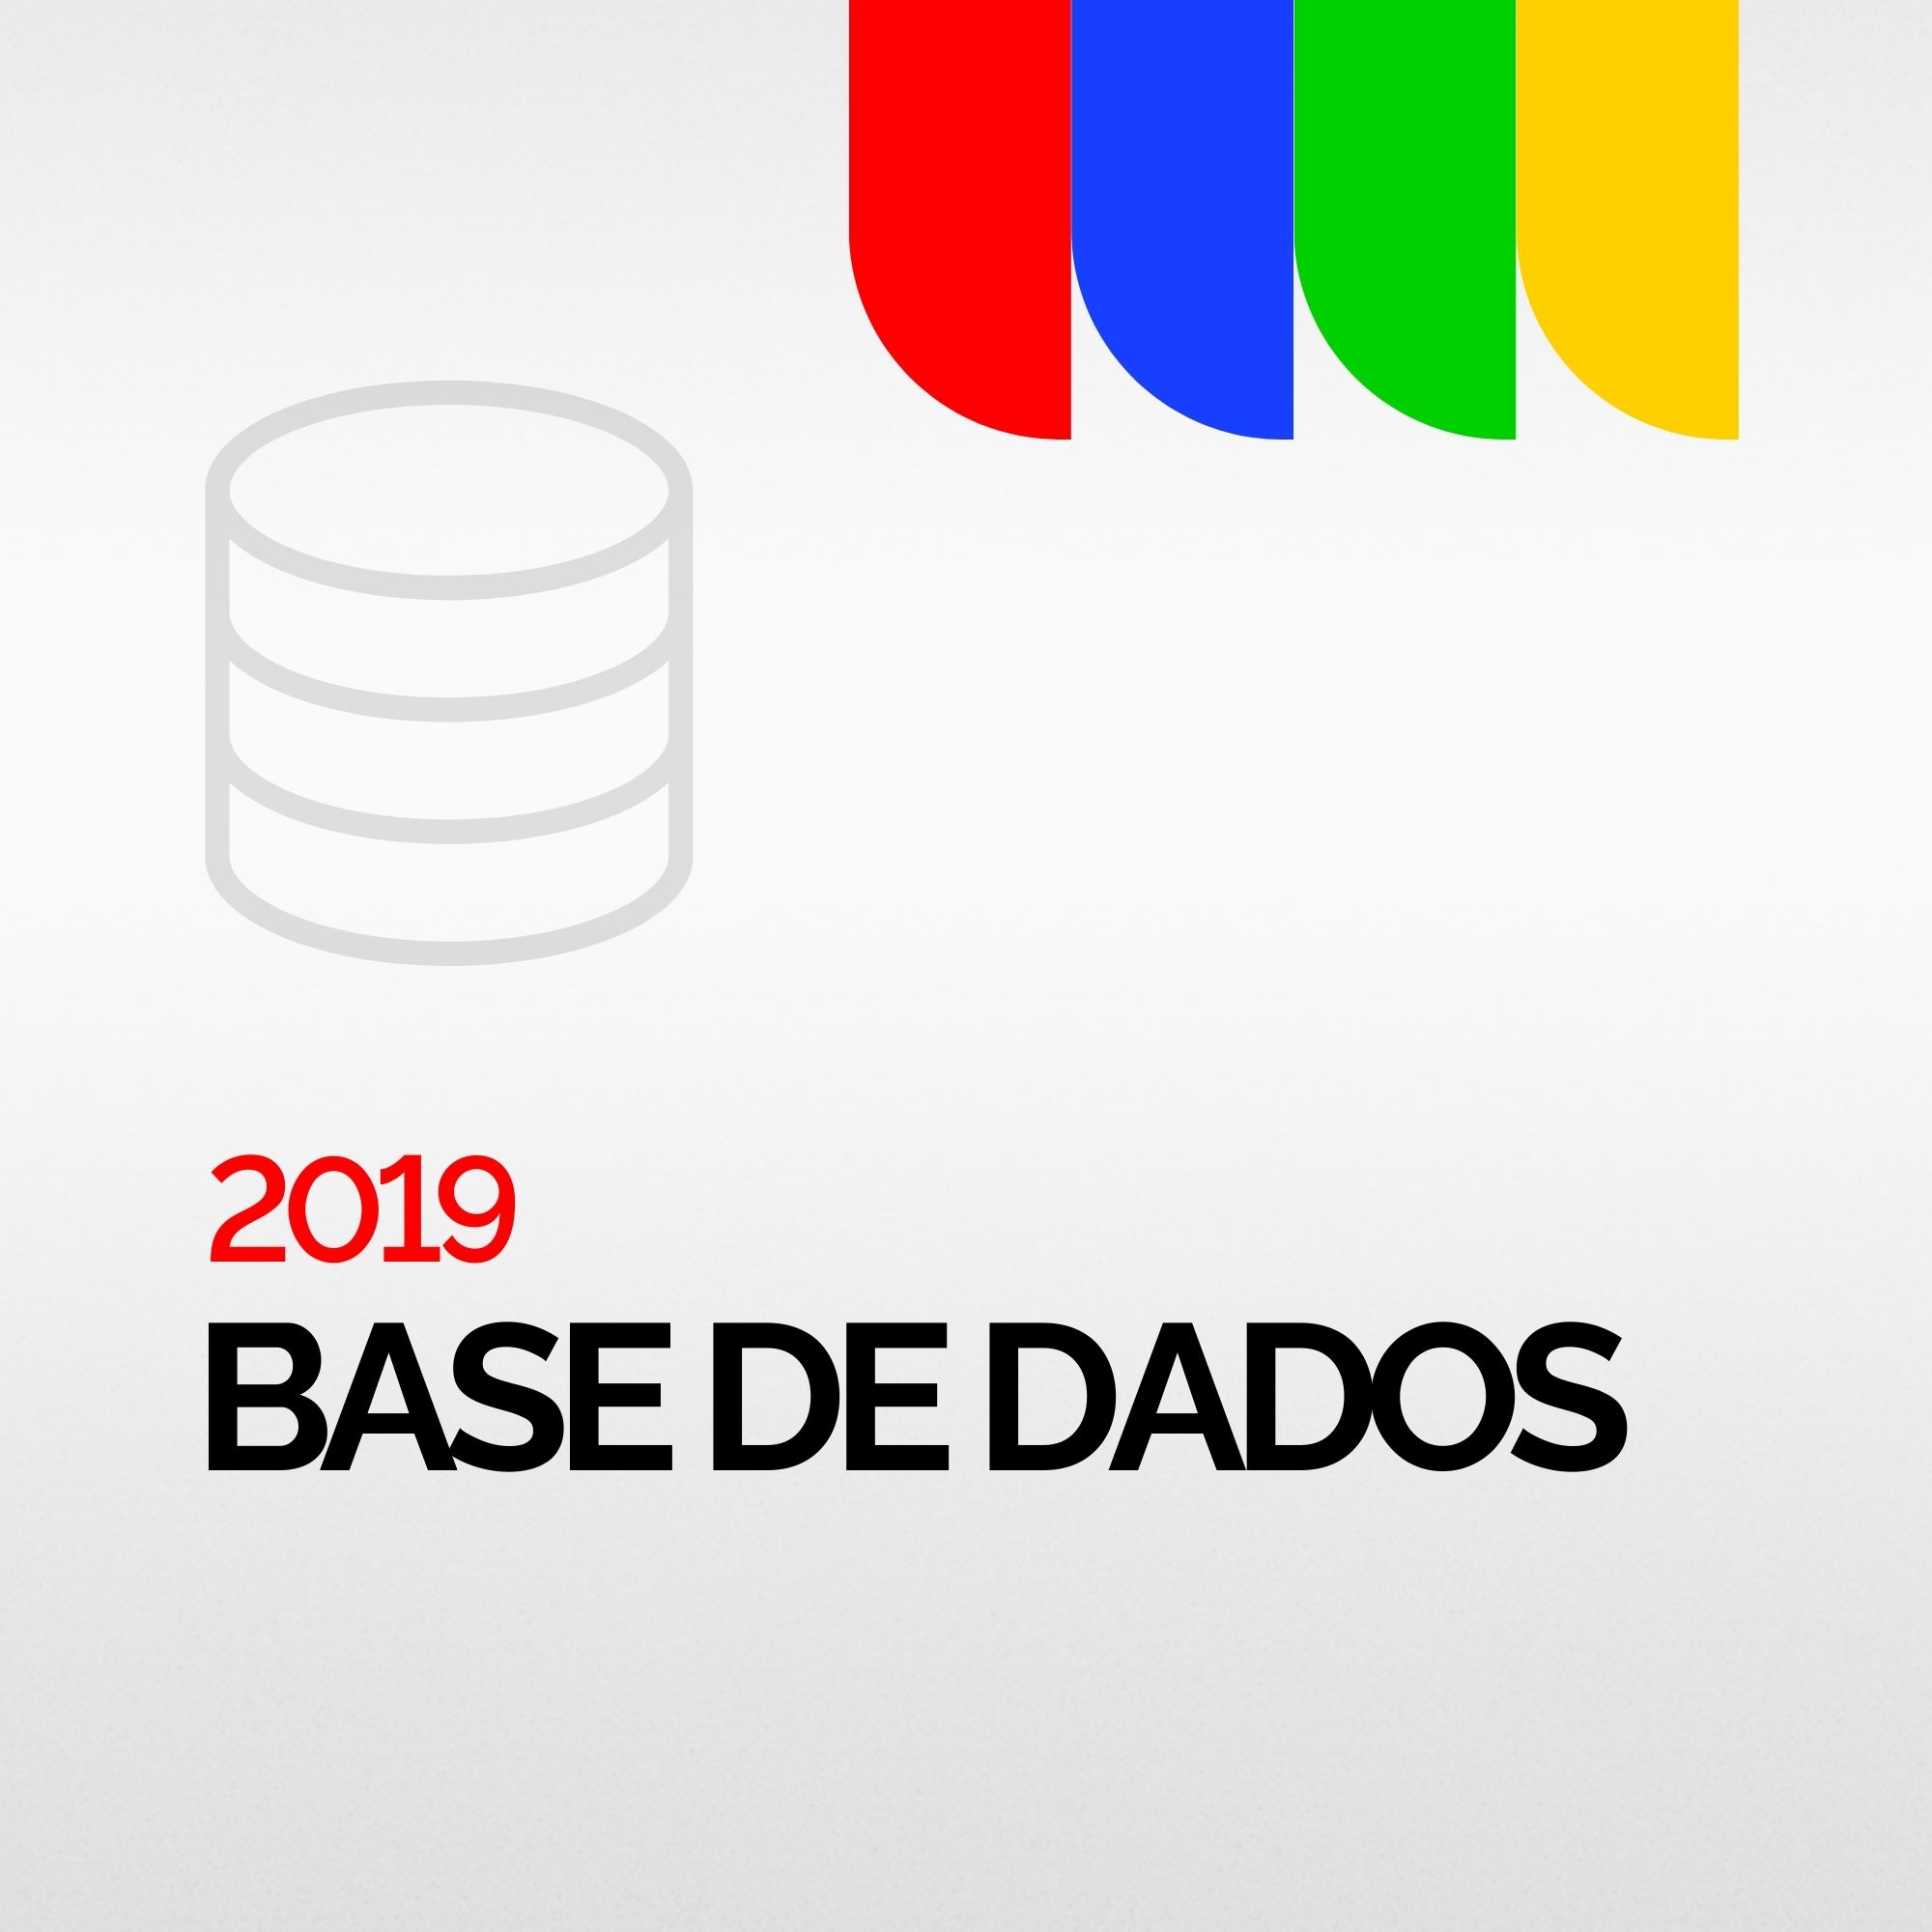 BASE DE DADOS 2019